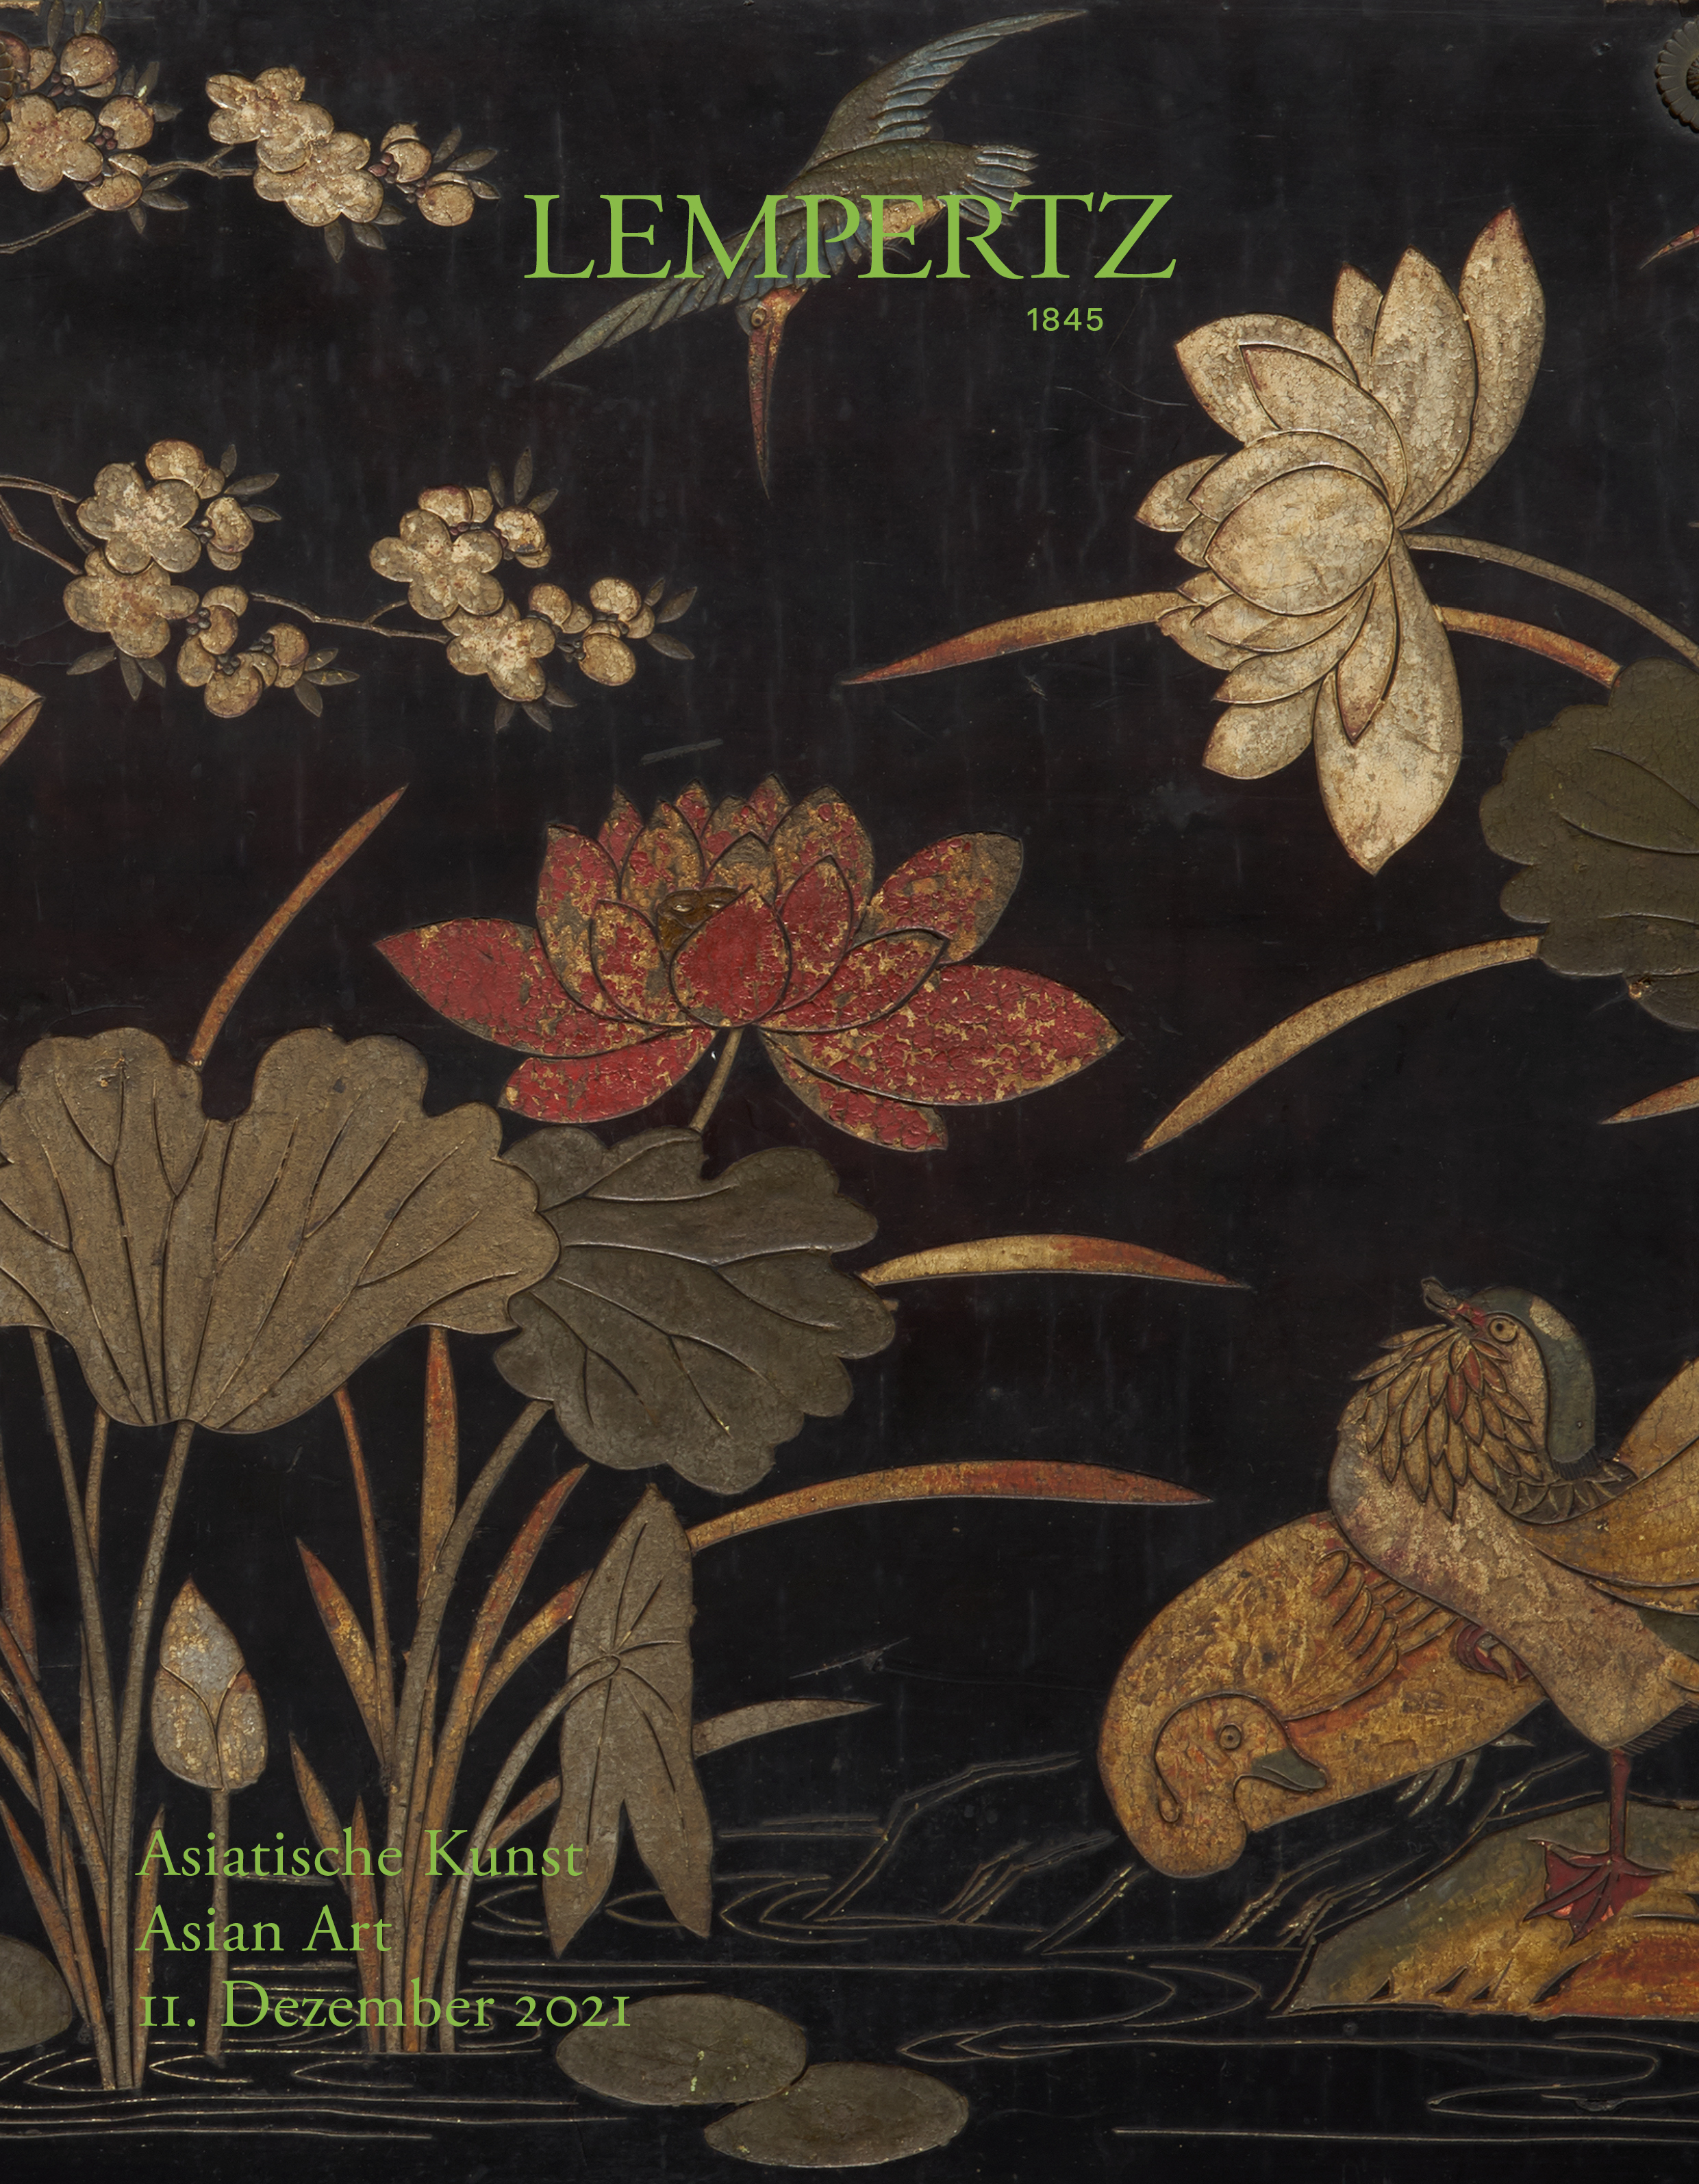 Auktionskatalog - Asiatische Kunst - Online Katalog - Auktion 1190 – Ersteigern Sie hochwertige Kunst in der nächsten Lempertz-Auktion!